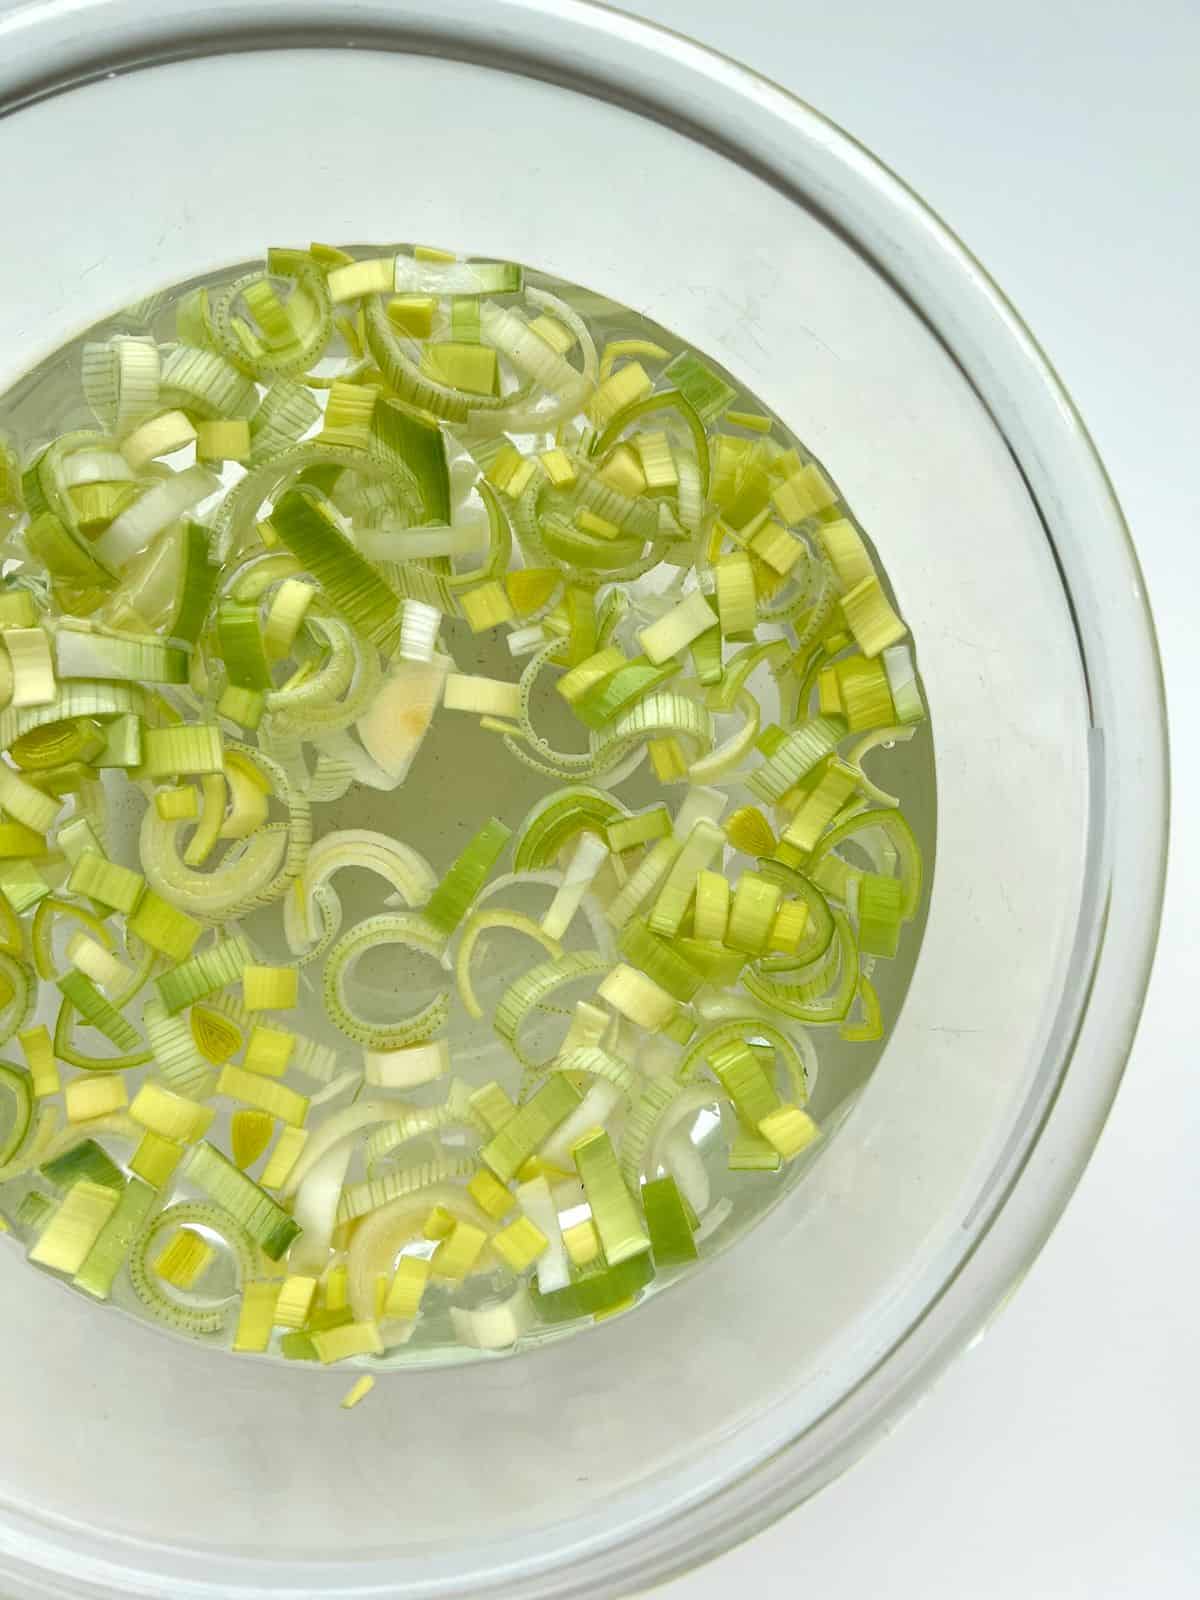 Cut leeks soaking in water in a glass bowl.